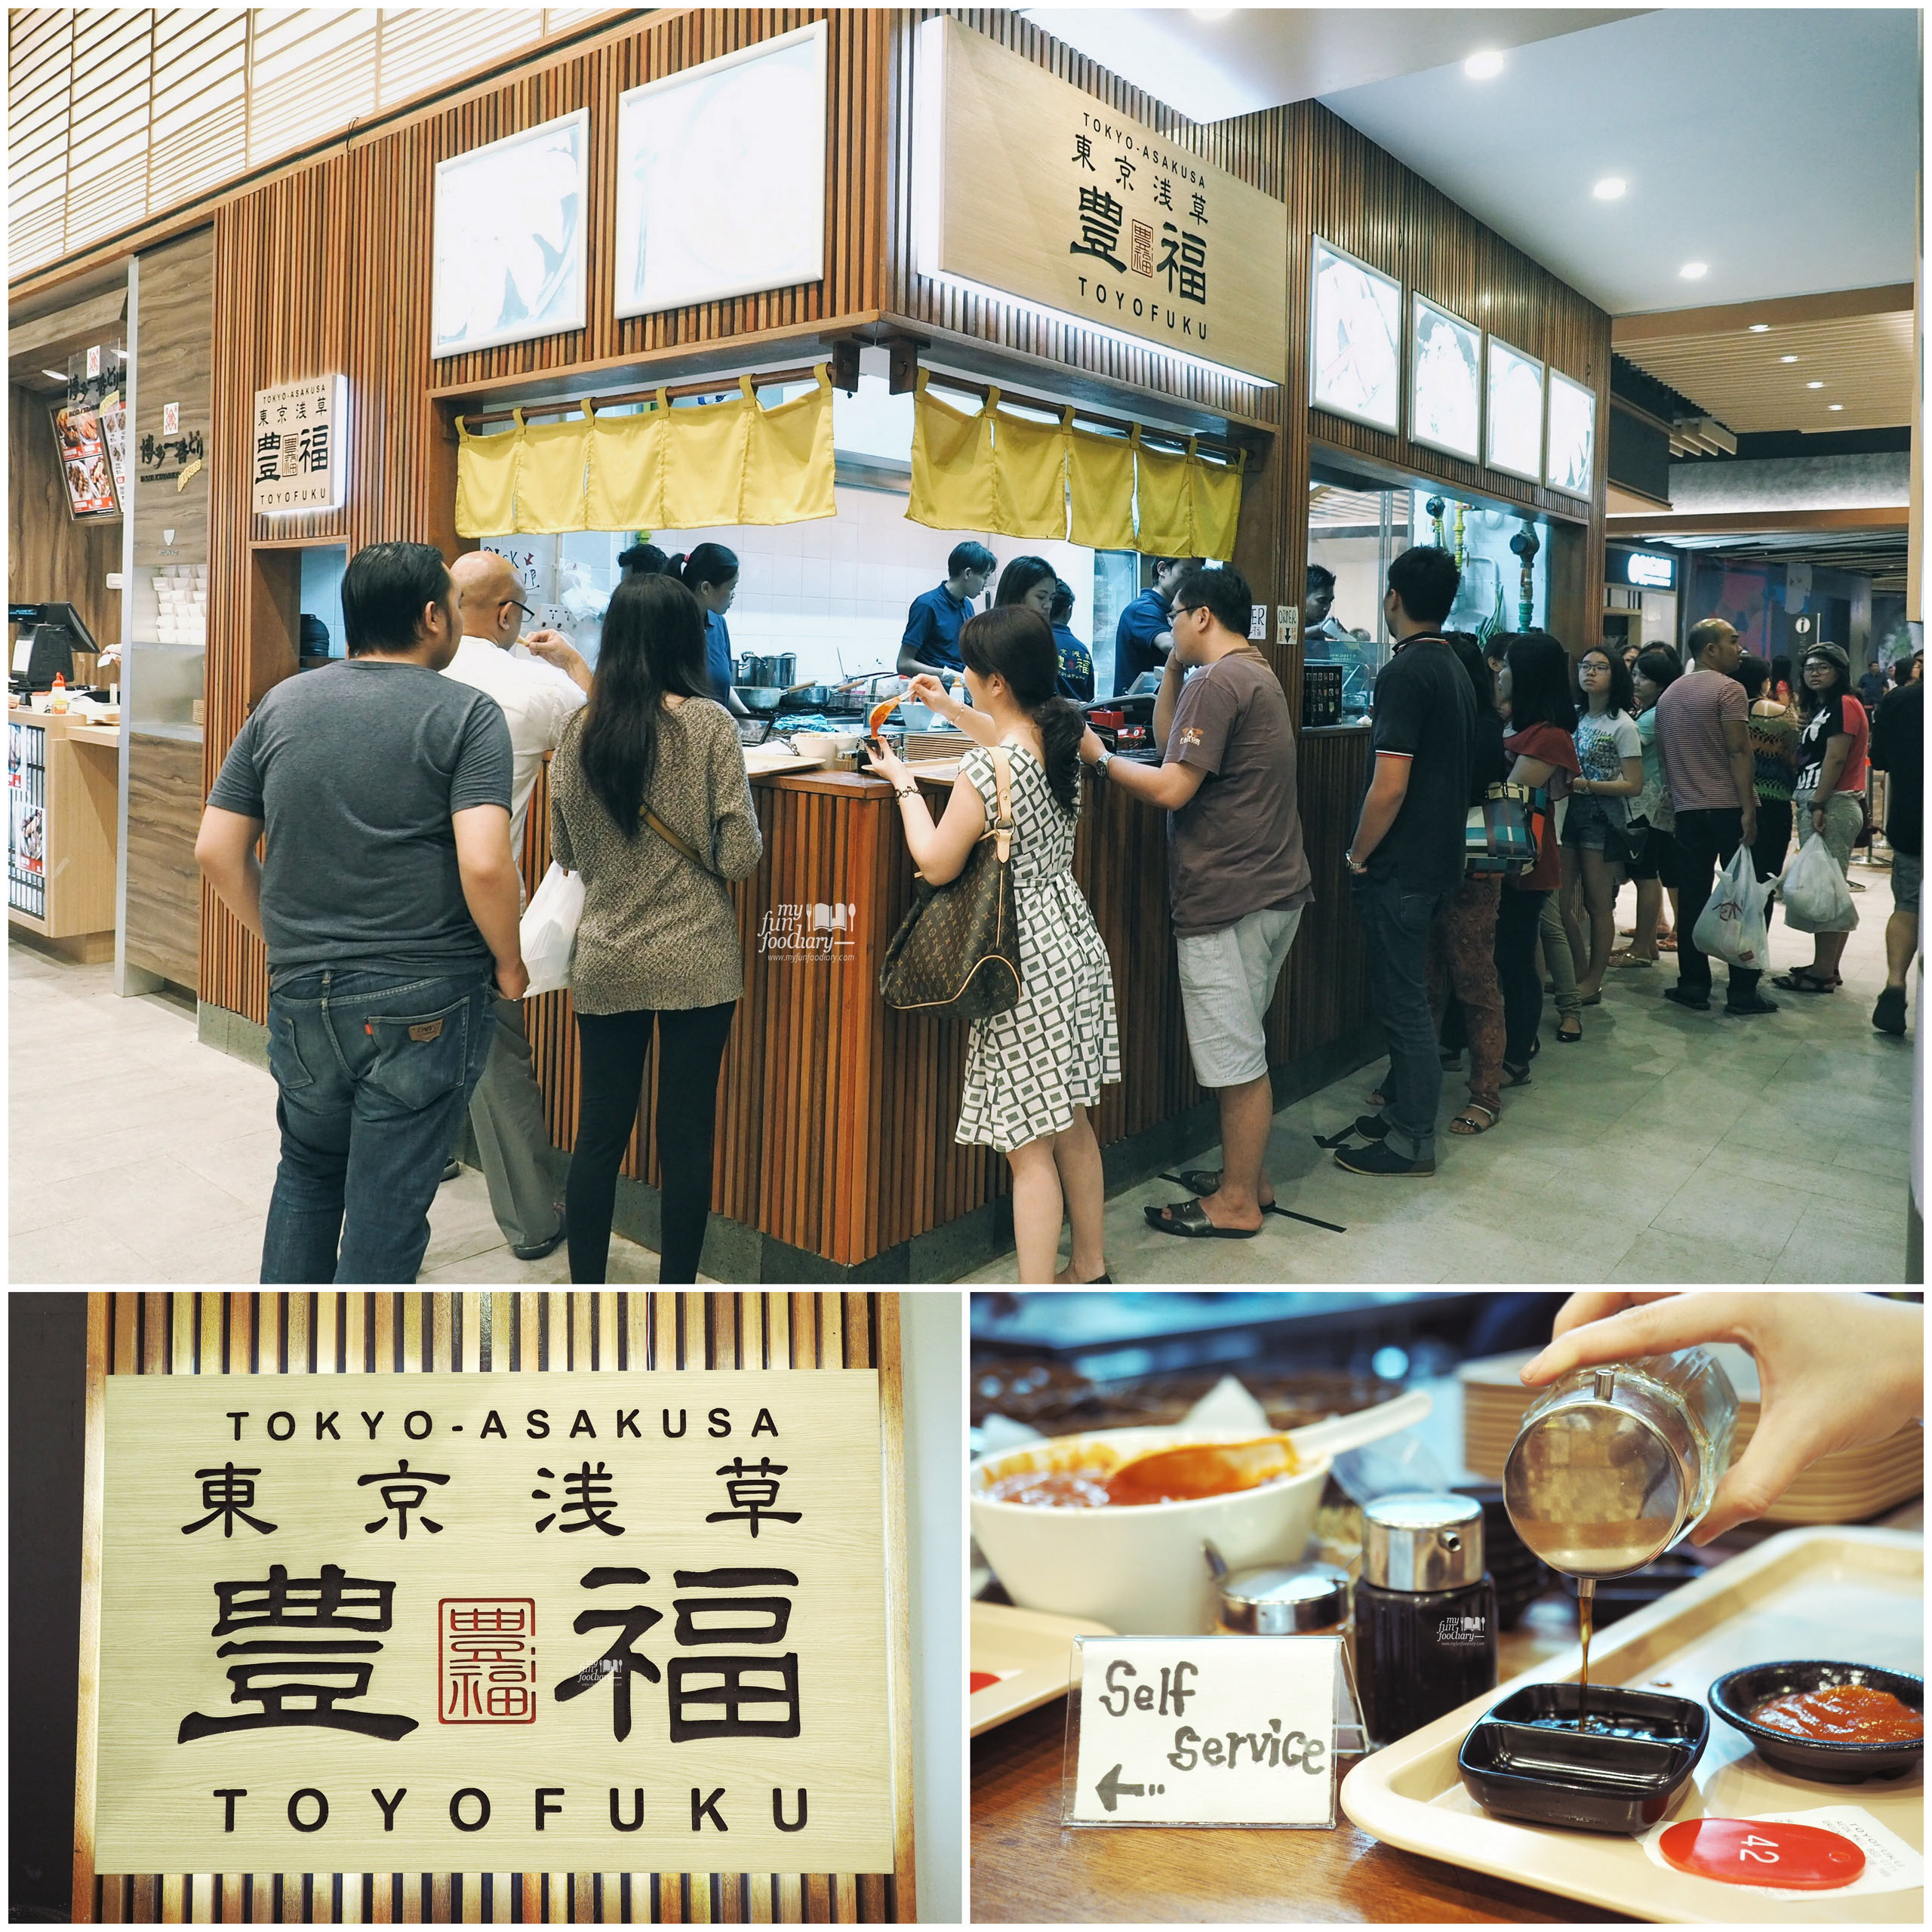 Gyoza Toyofuku at The Food Culture AEON Mall by Myfunfoodiary collage